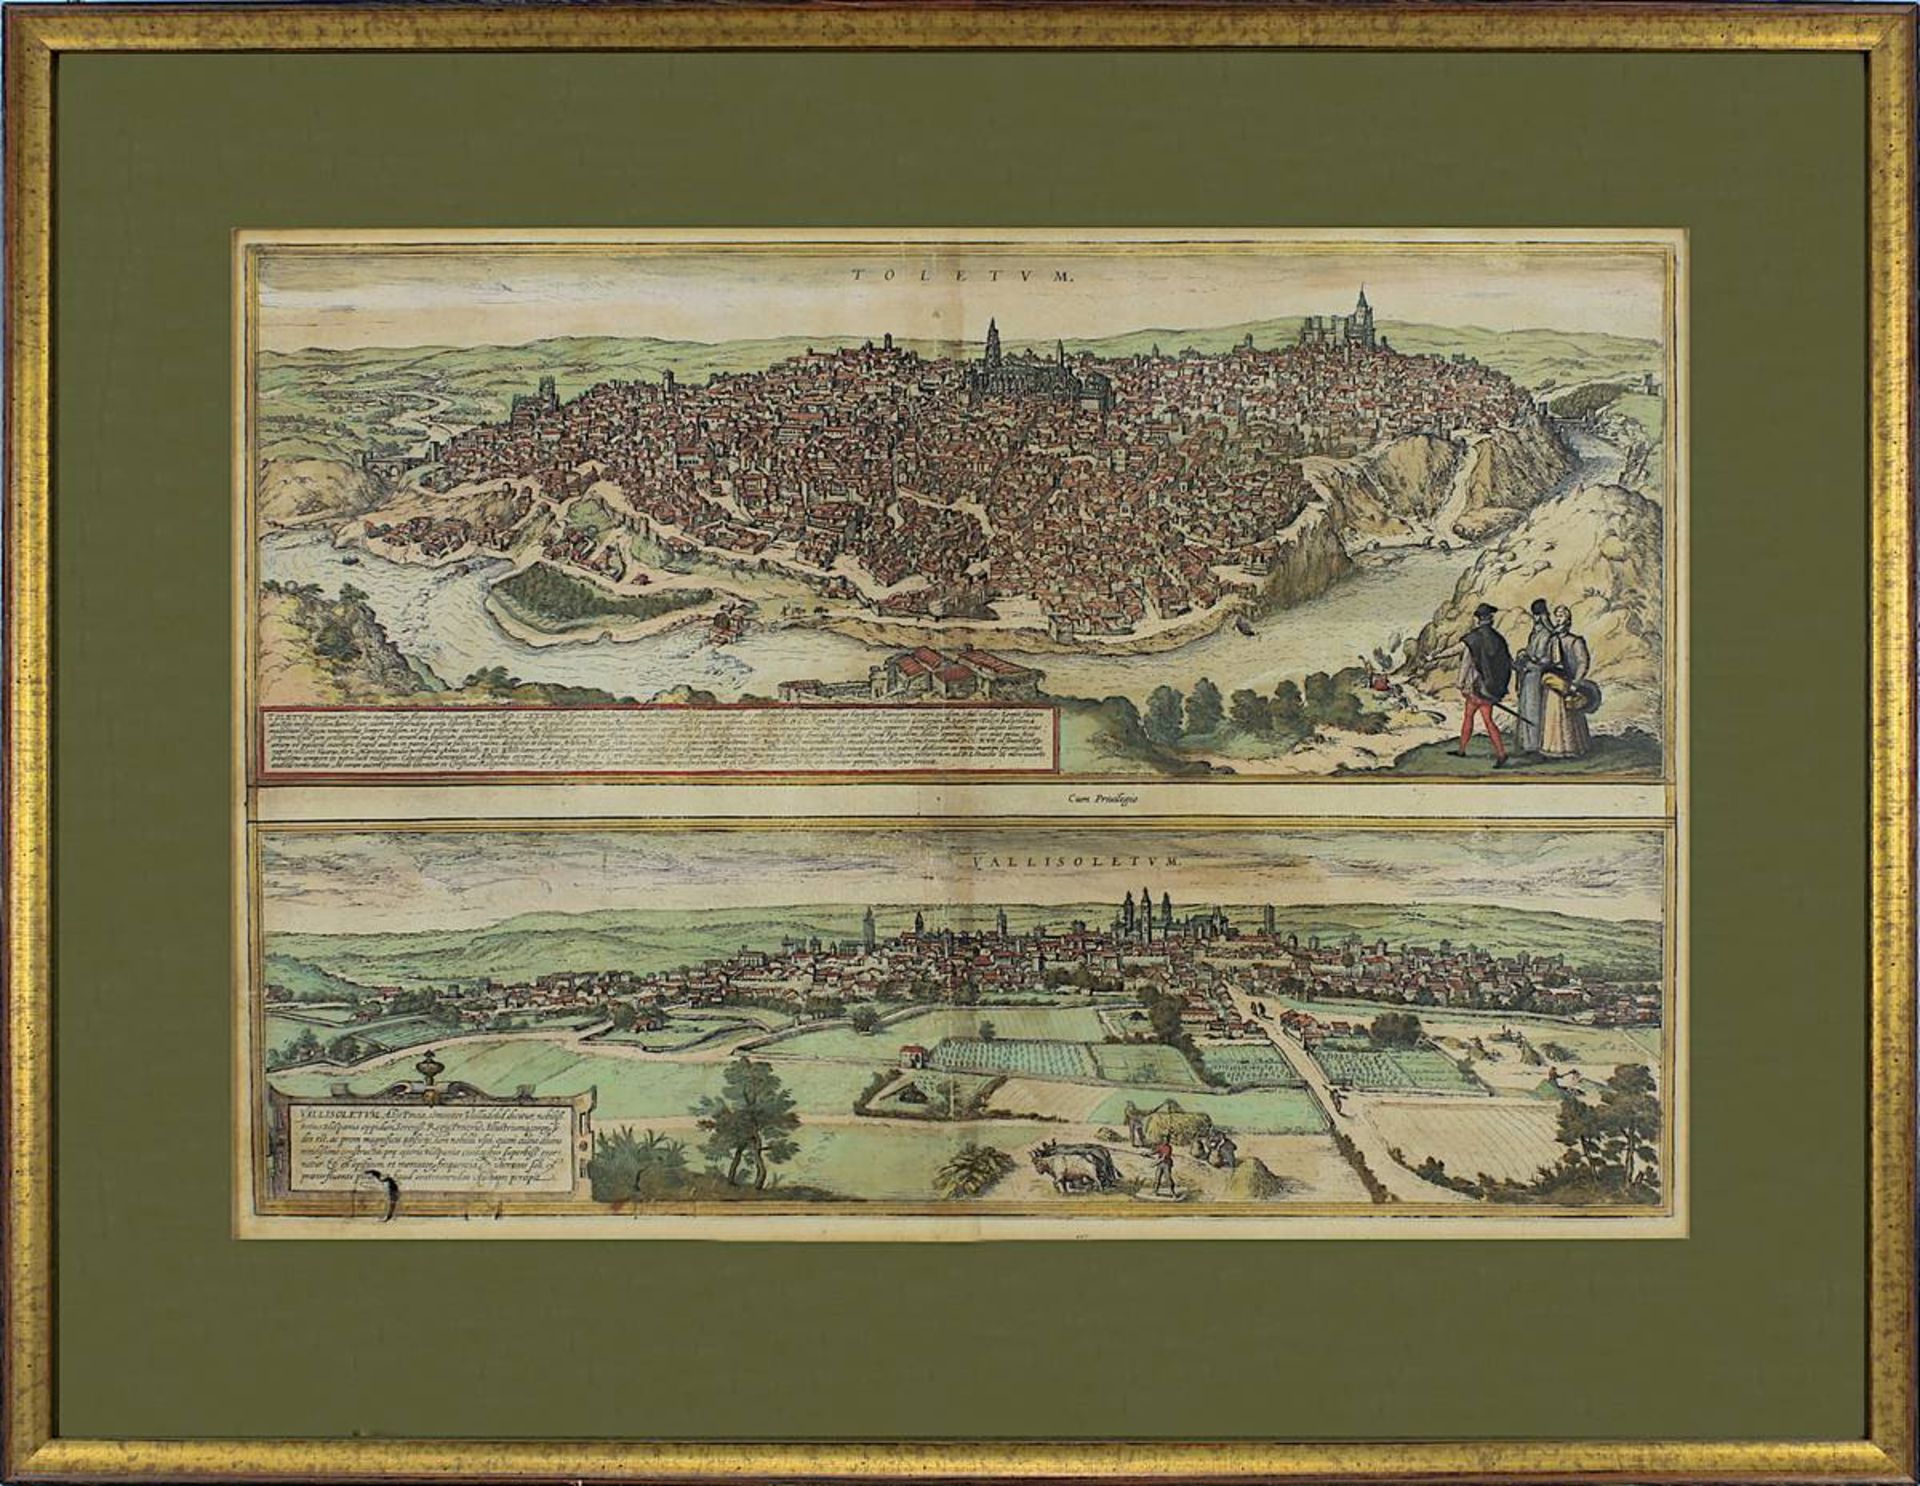 Toledo u. Valladolid, Blick jeweils auf die Stadt, kolorierte Kupferstiche auf einem Blatt, von